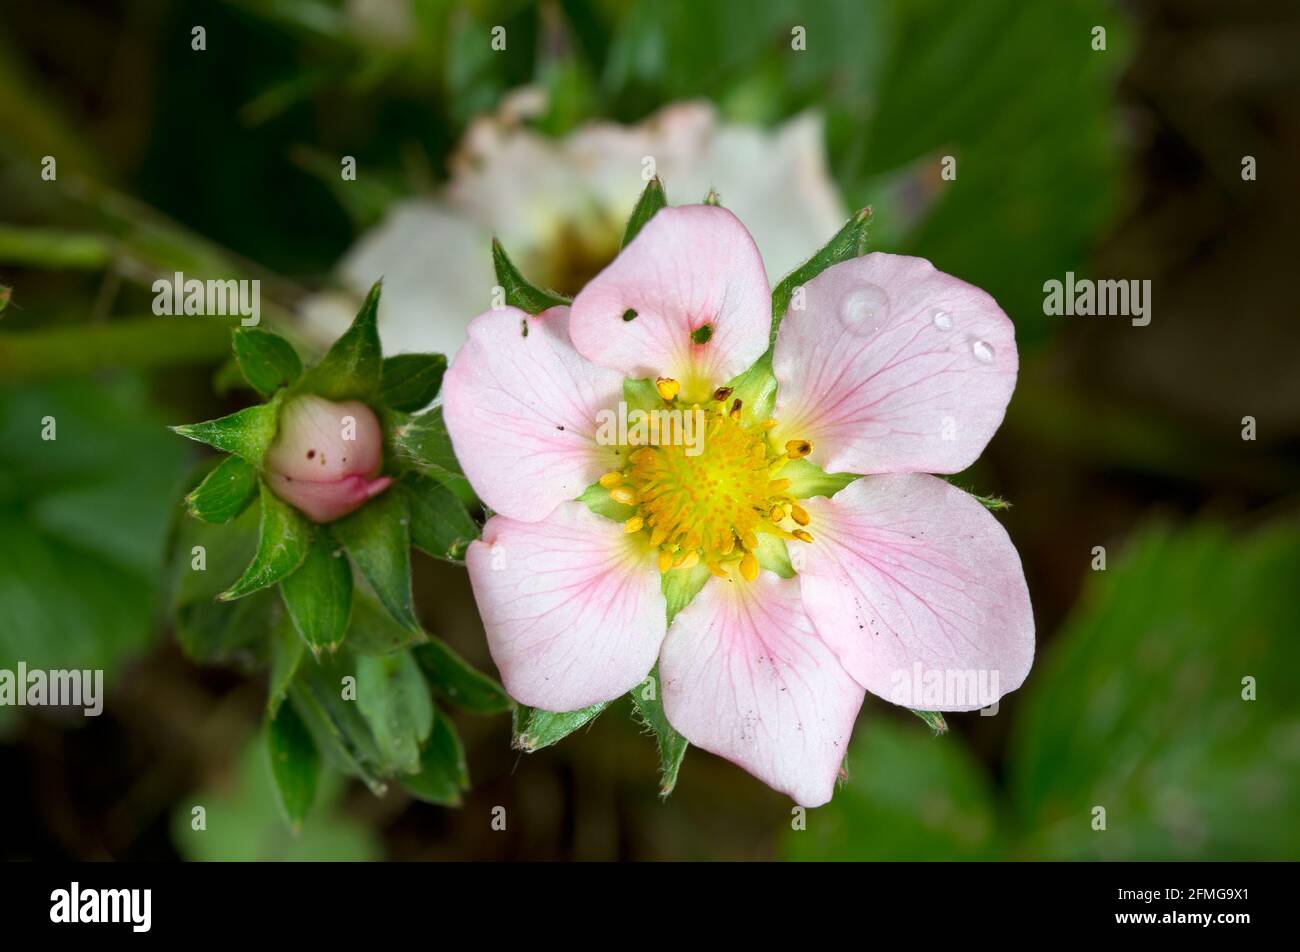 Primo piano del fiore rosa di una fragola, alcuni gocce d'acqua su un petalo Foto Stock